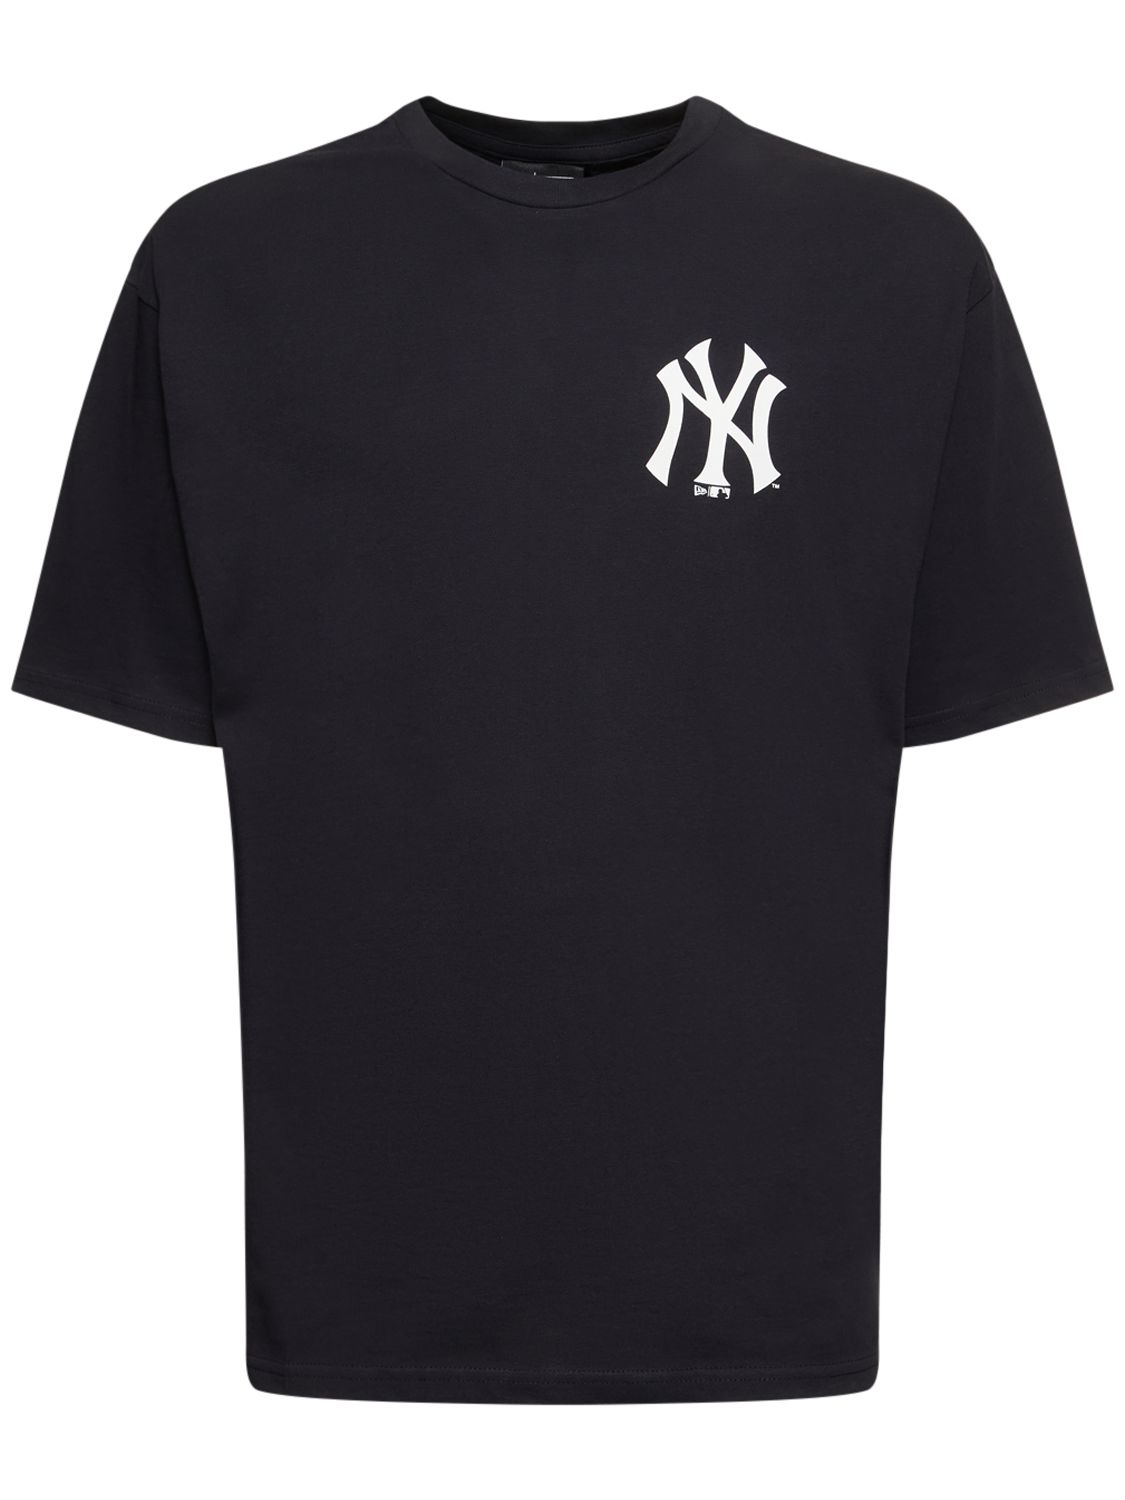 Yankee Stadium Printed Cotton T-shirt